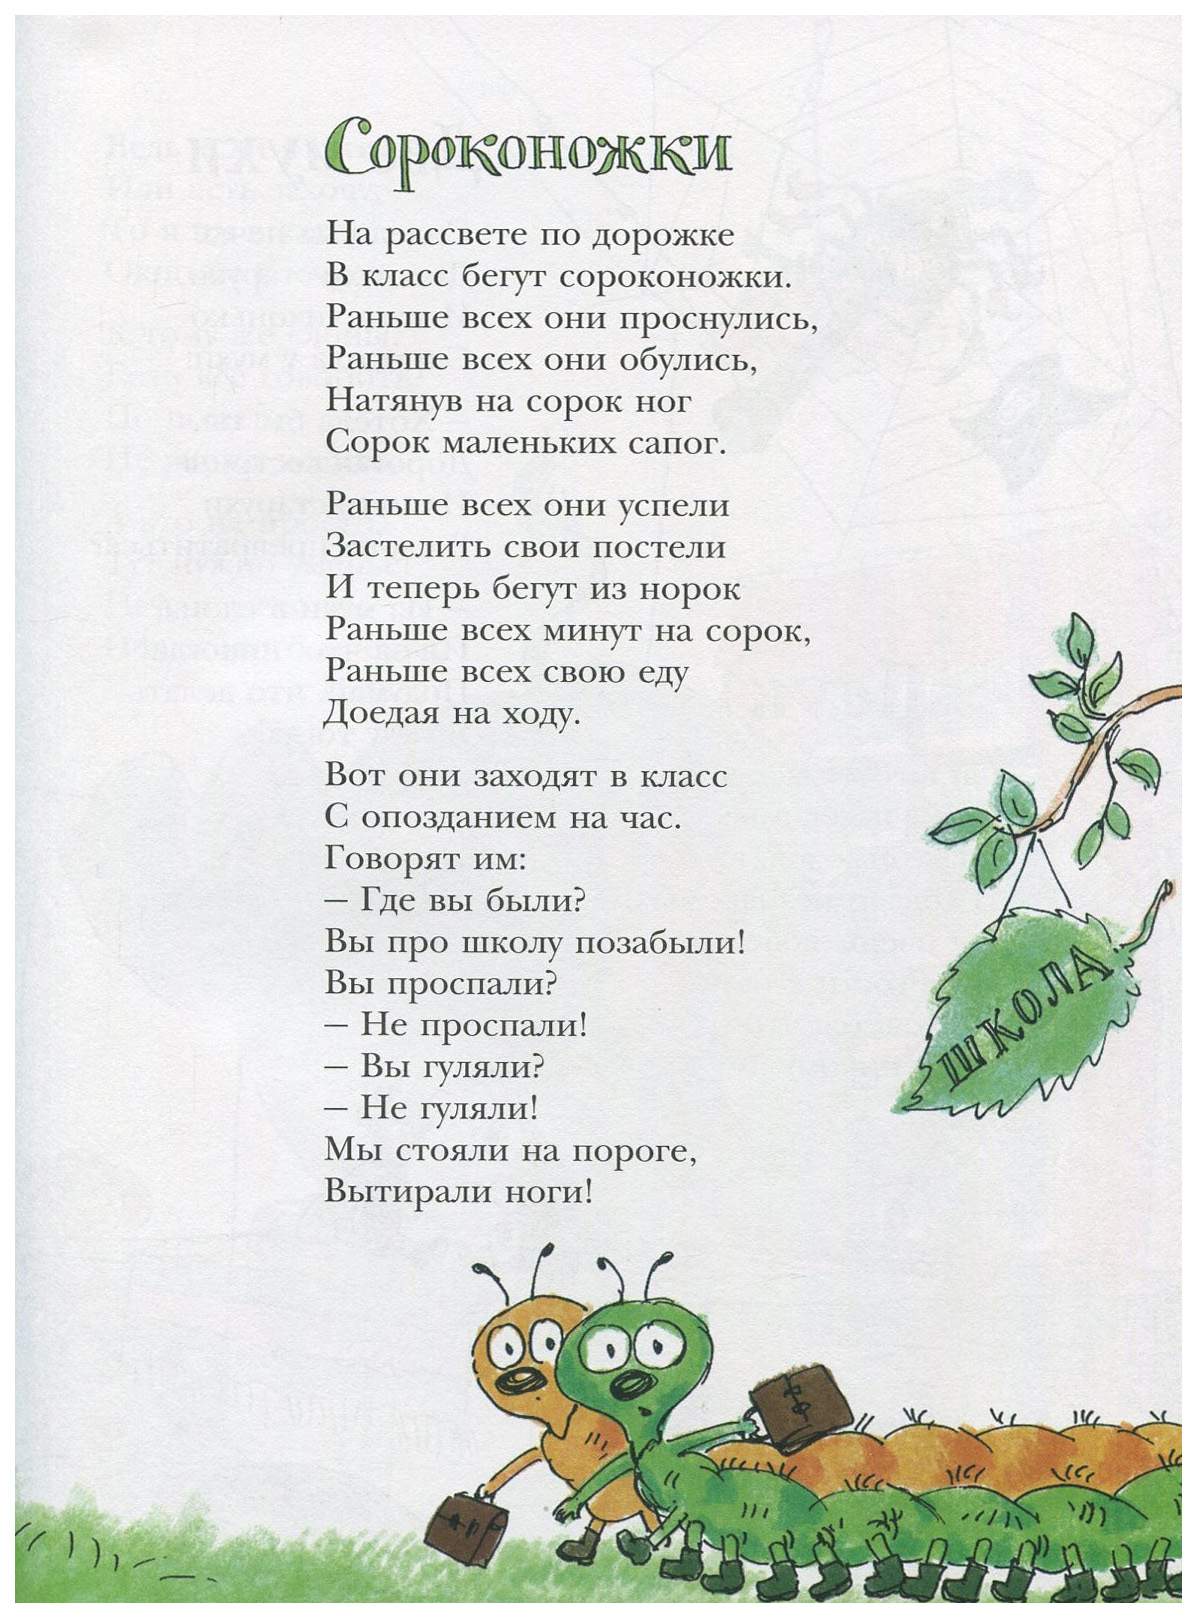 Слова песни по тропинке. Стихотворение про сороконожку. В Орлов стихи для детей. Стишок детский про сороконожку. Стихи Орлова для детей.